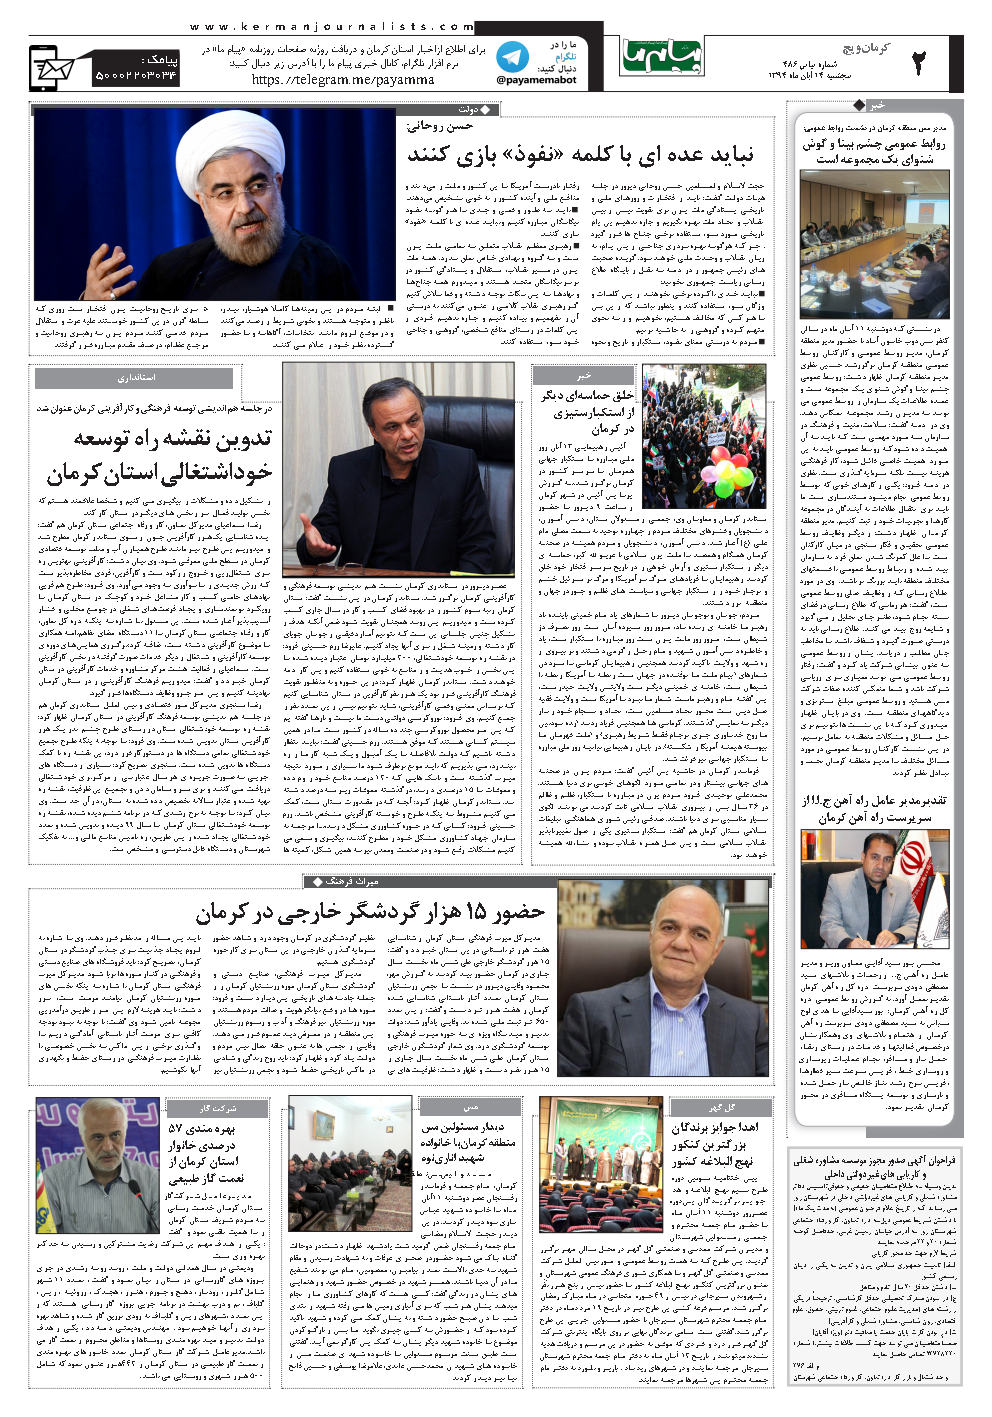 حضور 15 هزار گردشگر خارجی در کرمان